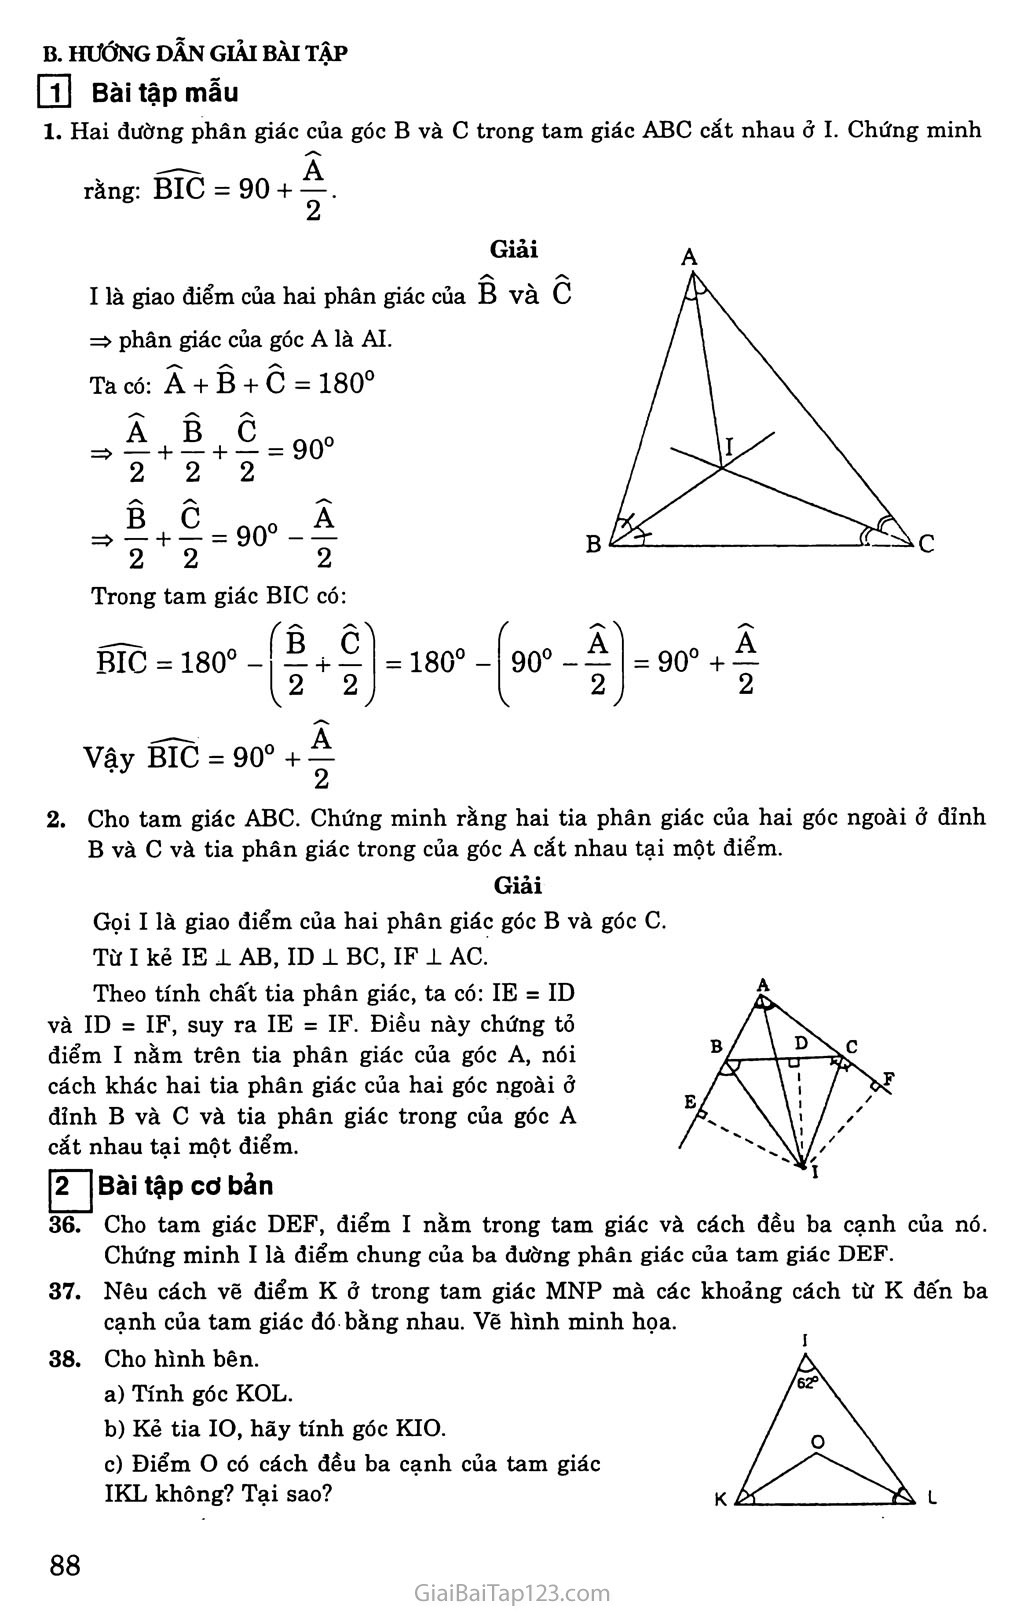 Bài 6. Tính chất ba đường phân giác của tam giác trang 2